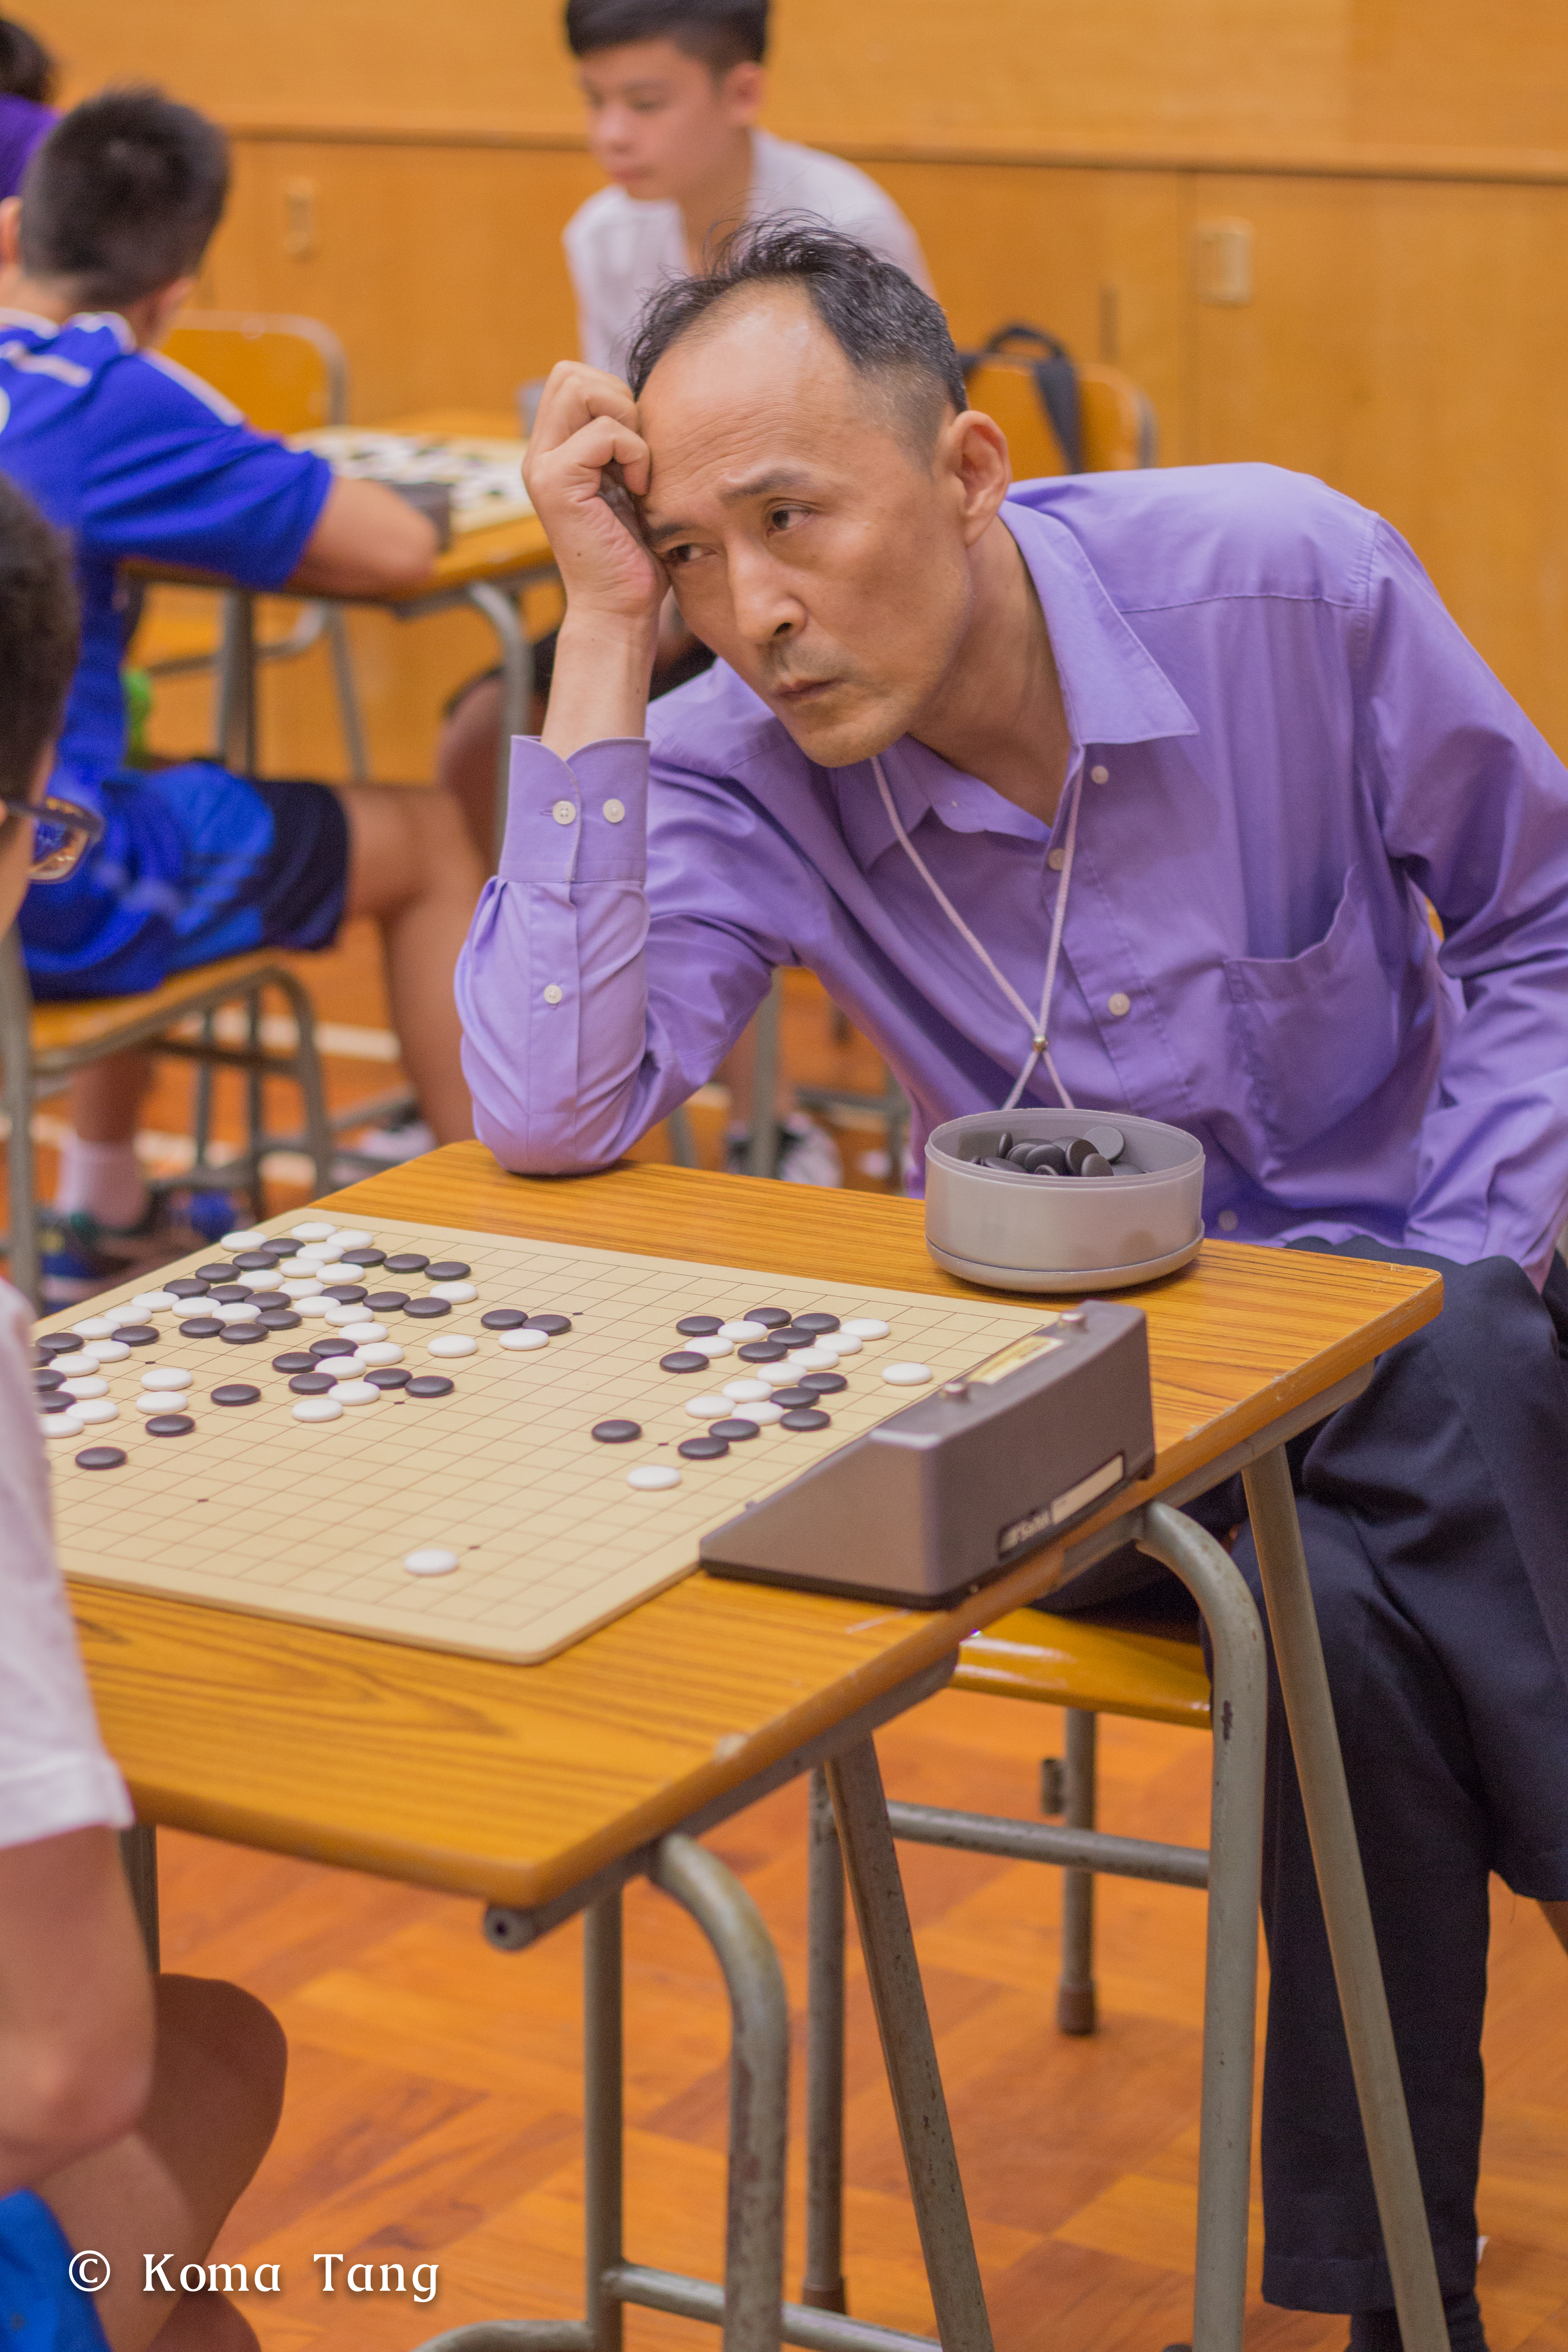 攝影師Koma Tang工作紀錄: 圍棋比賽活動攝影